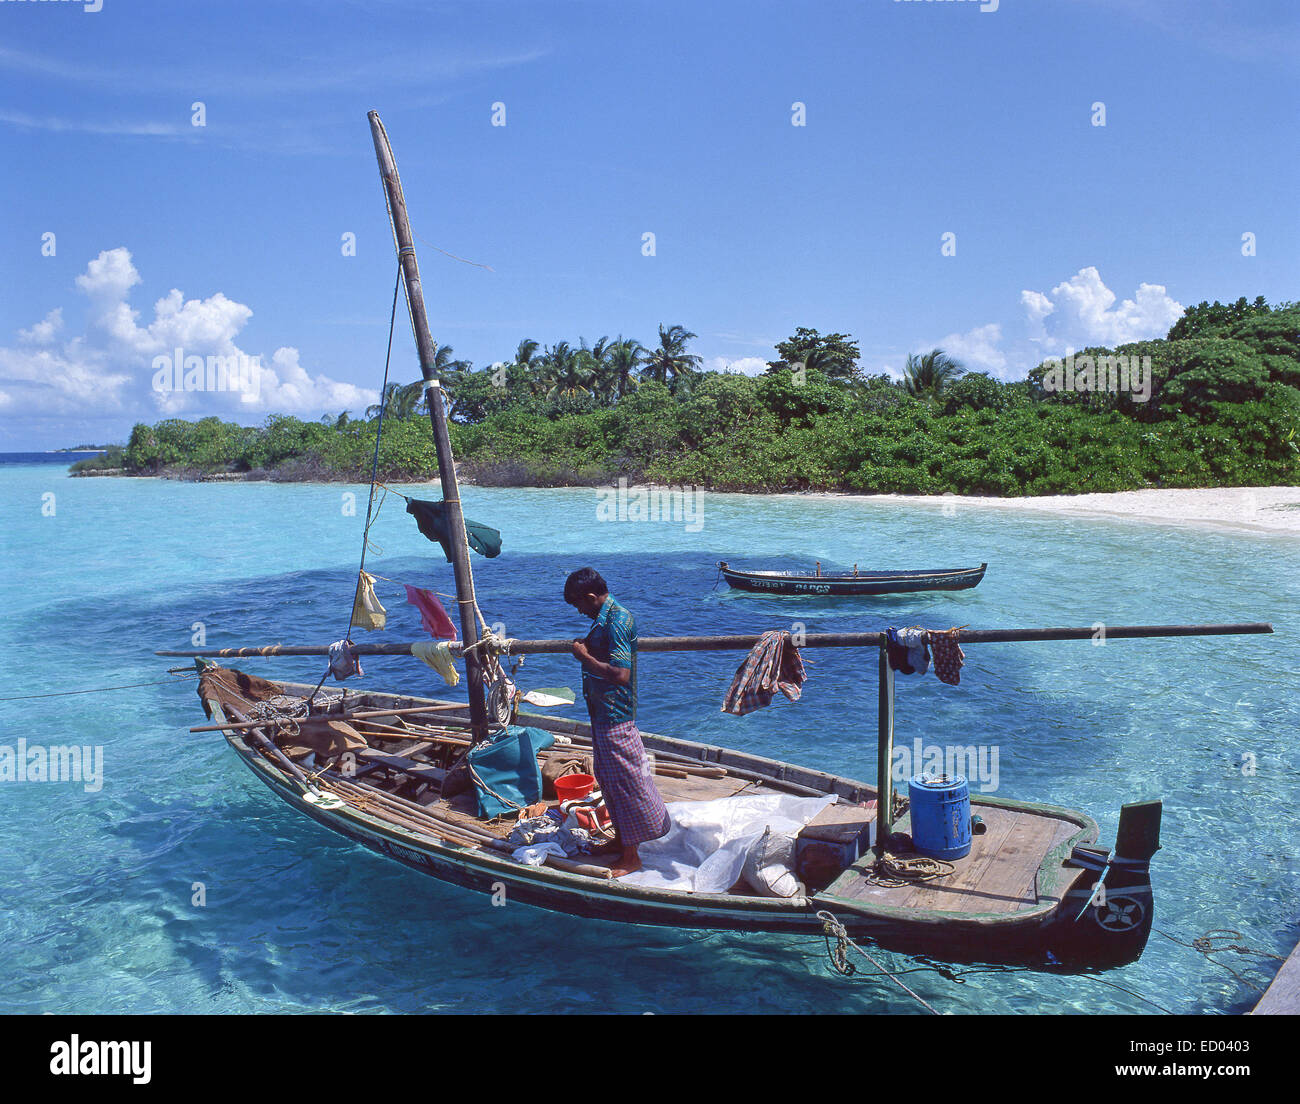 La trinchera fuera del barco de pesca, bandos, Atolón Kaafu, República de Maldivas Foto de stock